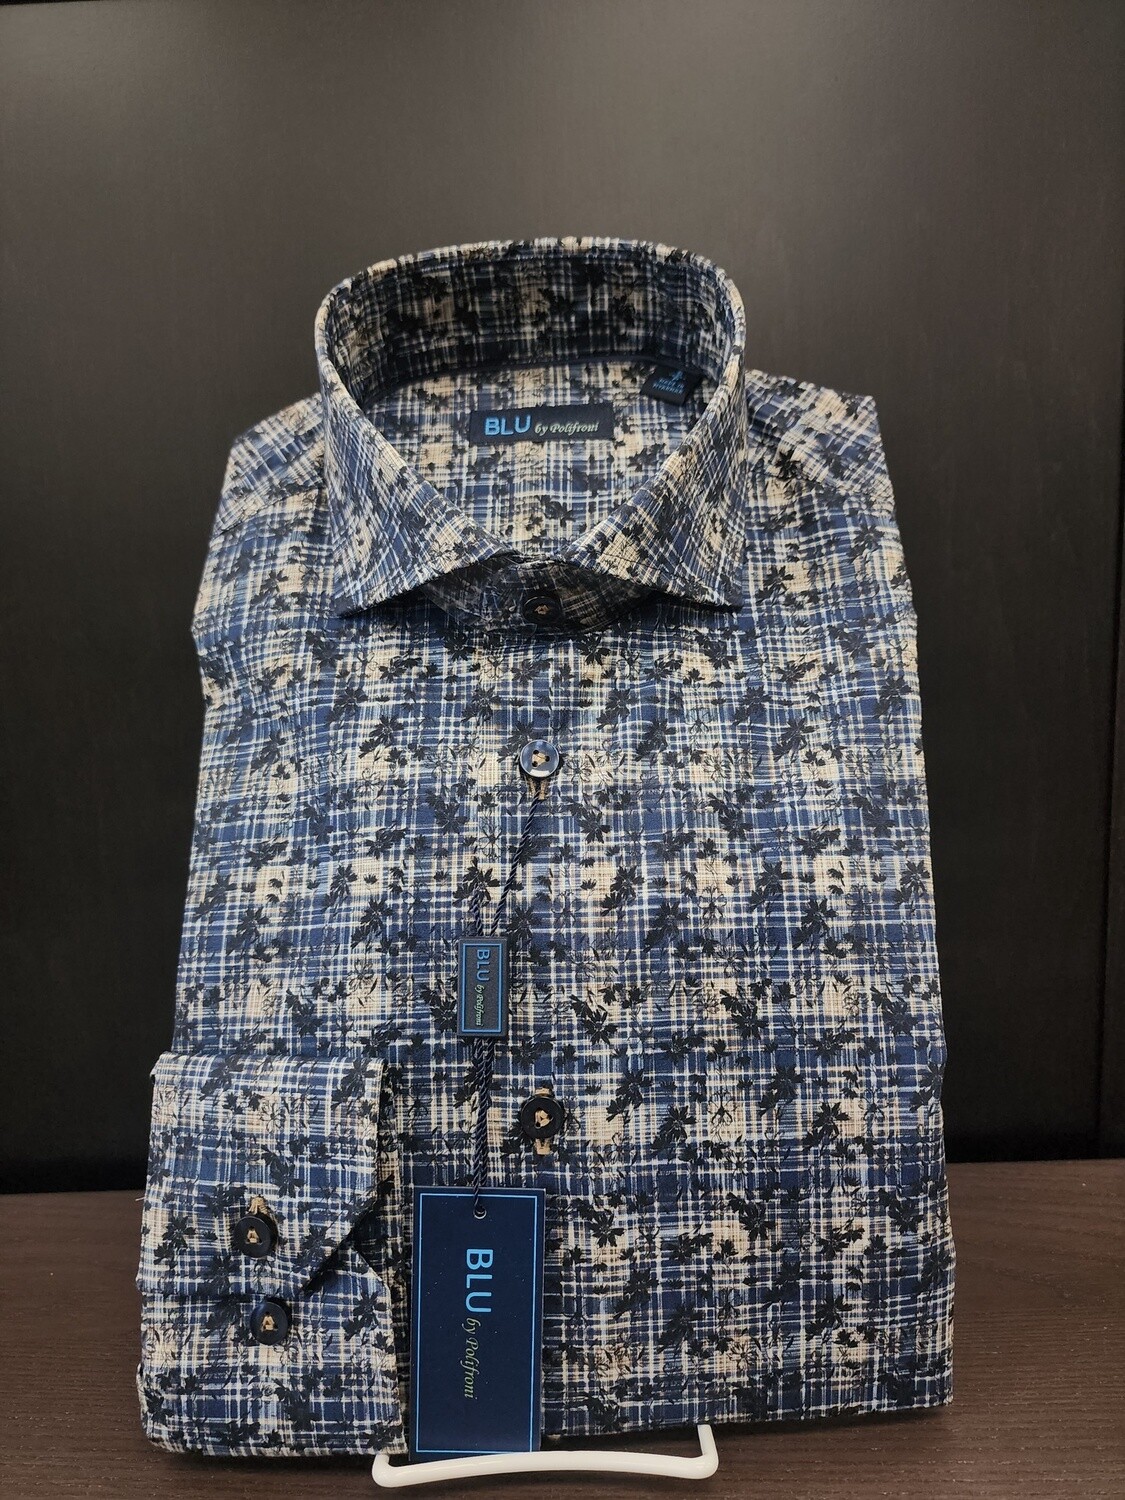 Blu Shirt - Inky Check